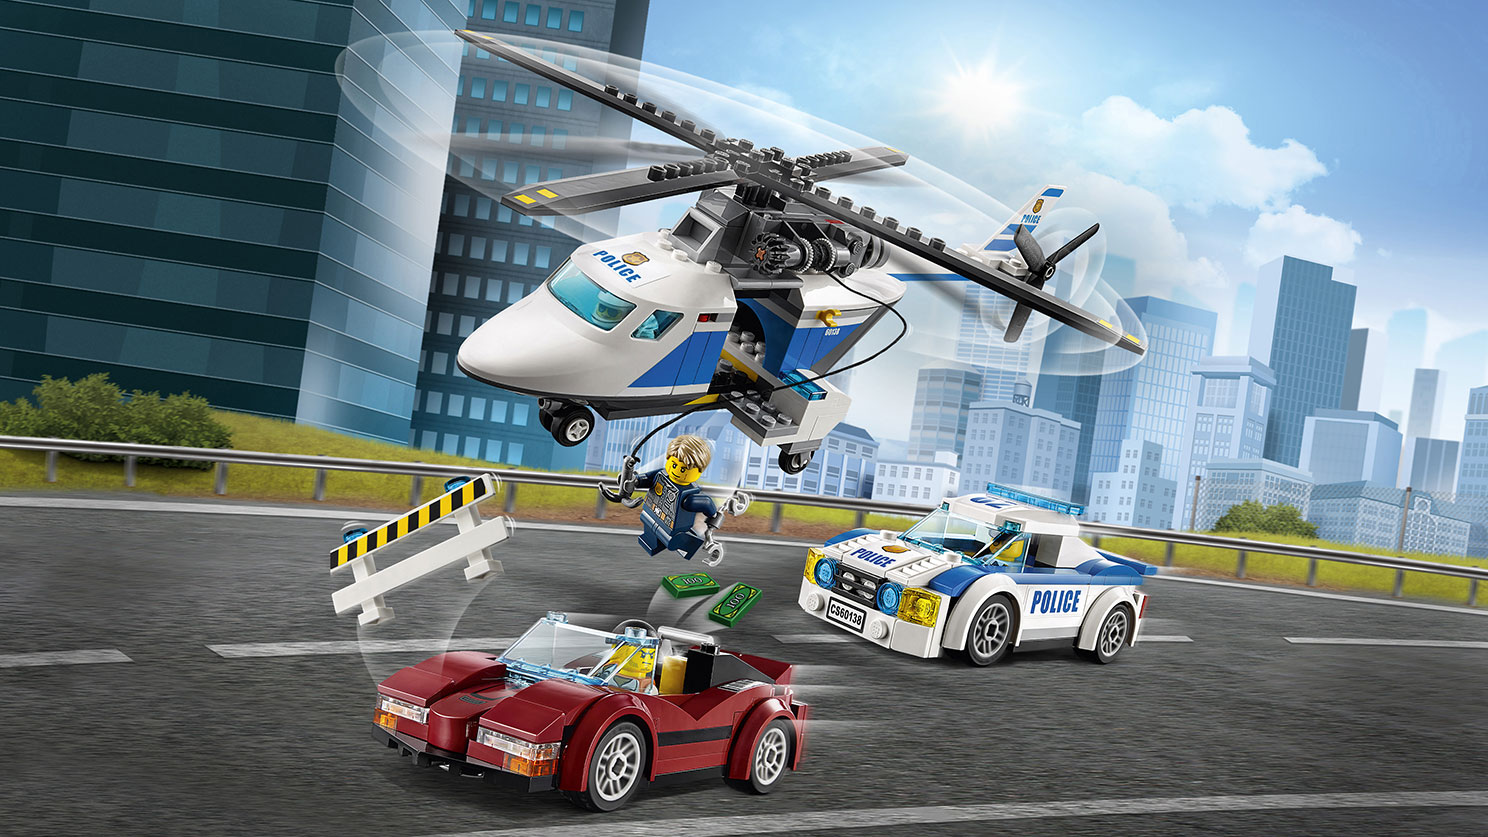 ポリスヘリコプターとポリスカー 60138 - レゴ®シティ セット - LEGO.comキッズ